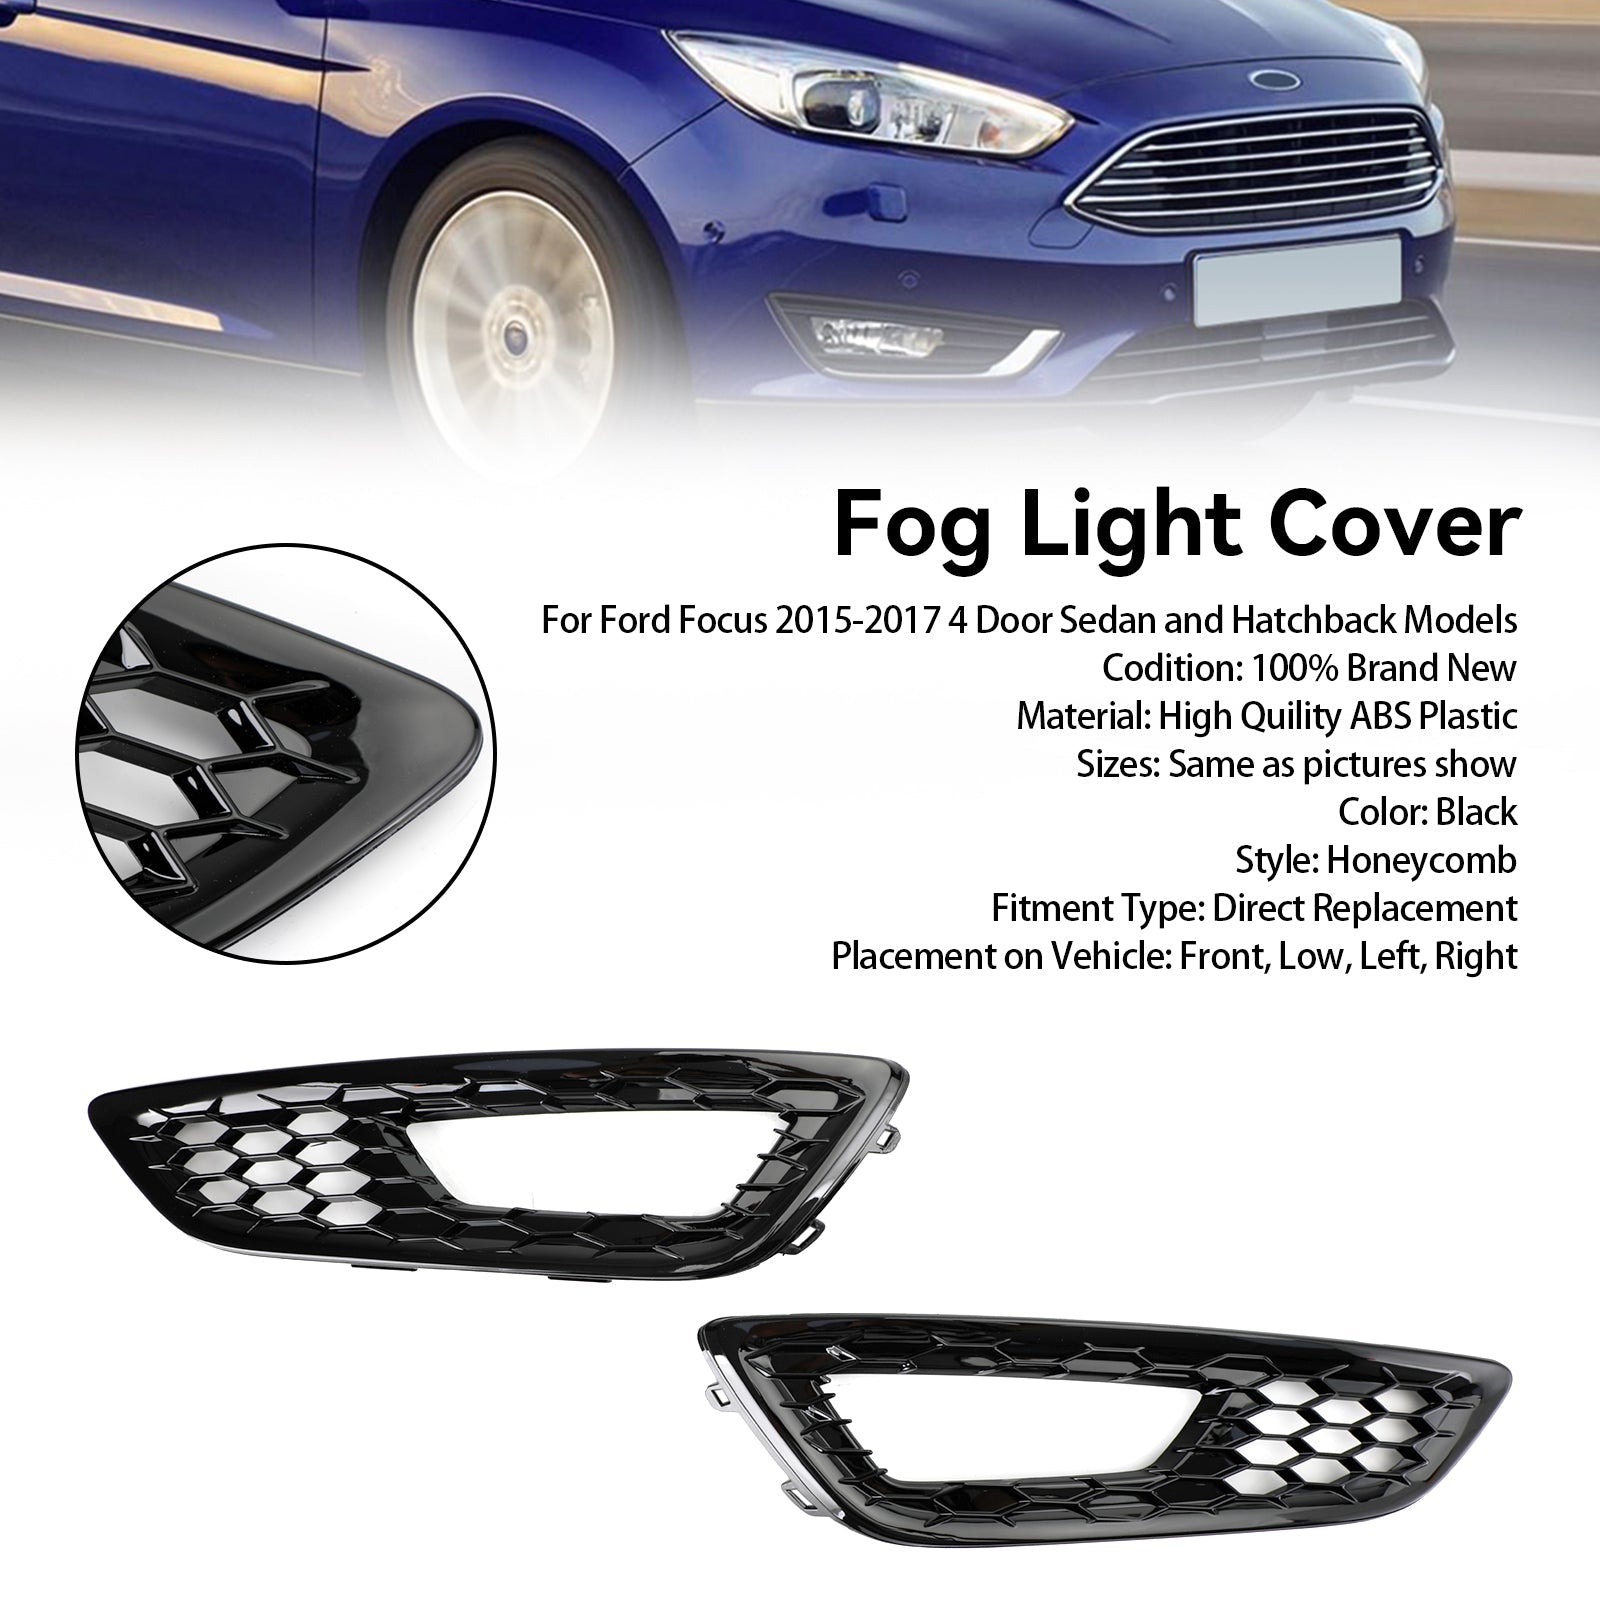 Ford Focus 2015-2017 coppia di paraurti anteriore fendinebbia copertura ghiera griglia